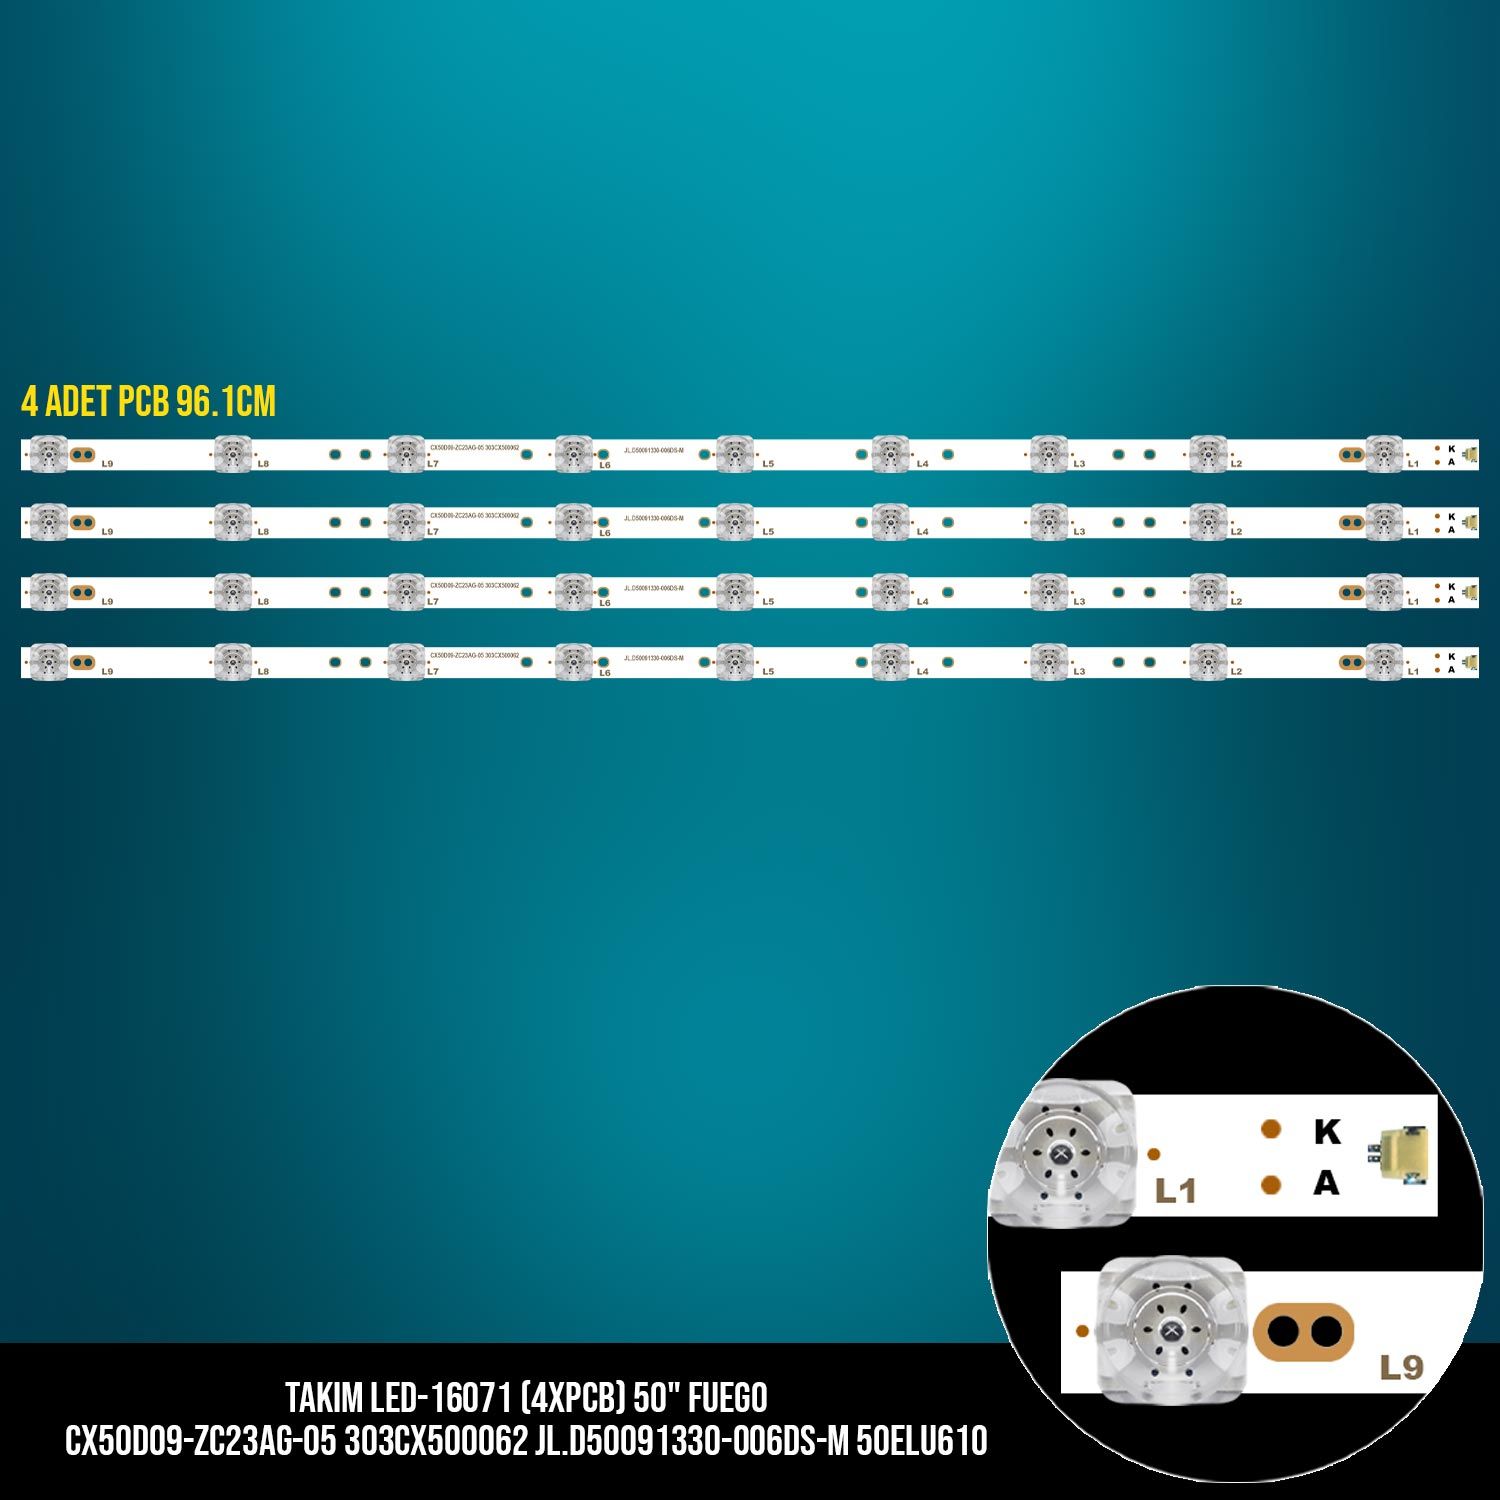 TAKIM LED-171 (4XPCB) 50 FUEGO CX50D09-ZC23AG-05 303CX500062 JL.D50091330-006DS-M 50ELU610 ETC